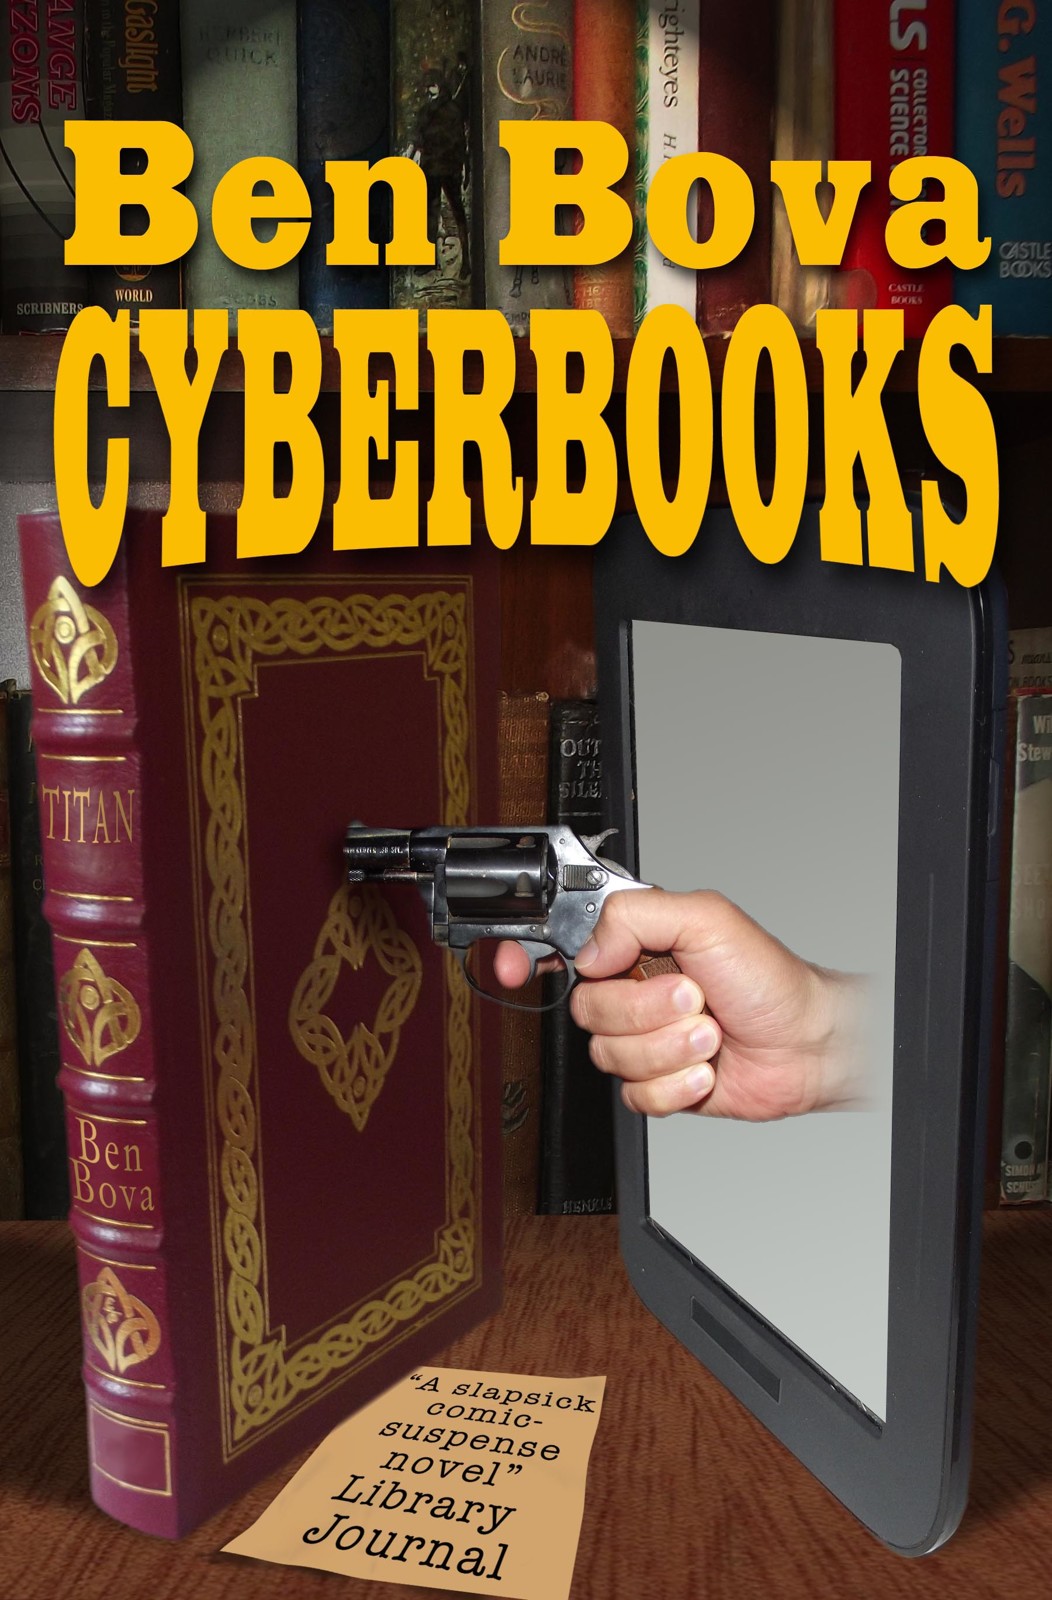 Cyberbooks by Ben Bova